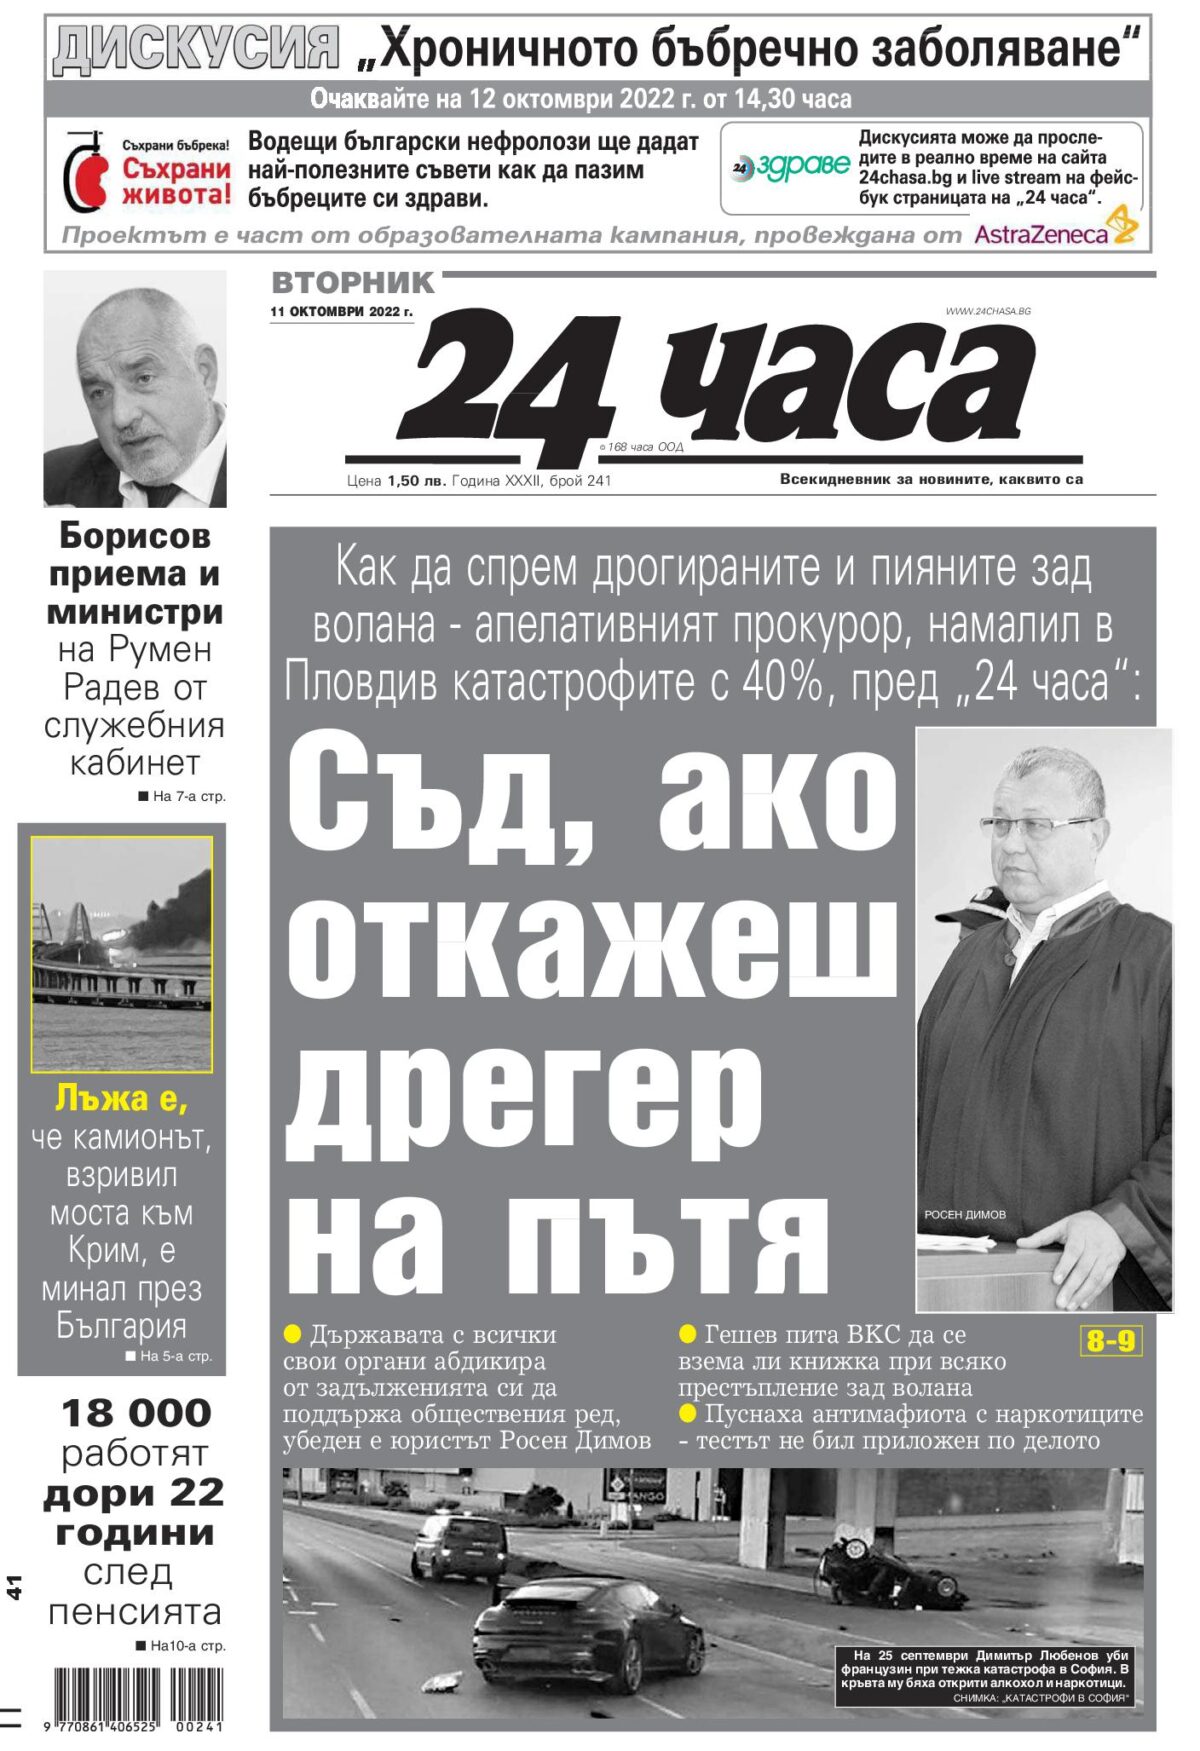 Вестници и списания: Борисов готов да остави служебни министри в новия кабинет, ако и Радев е съгласен